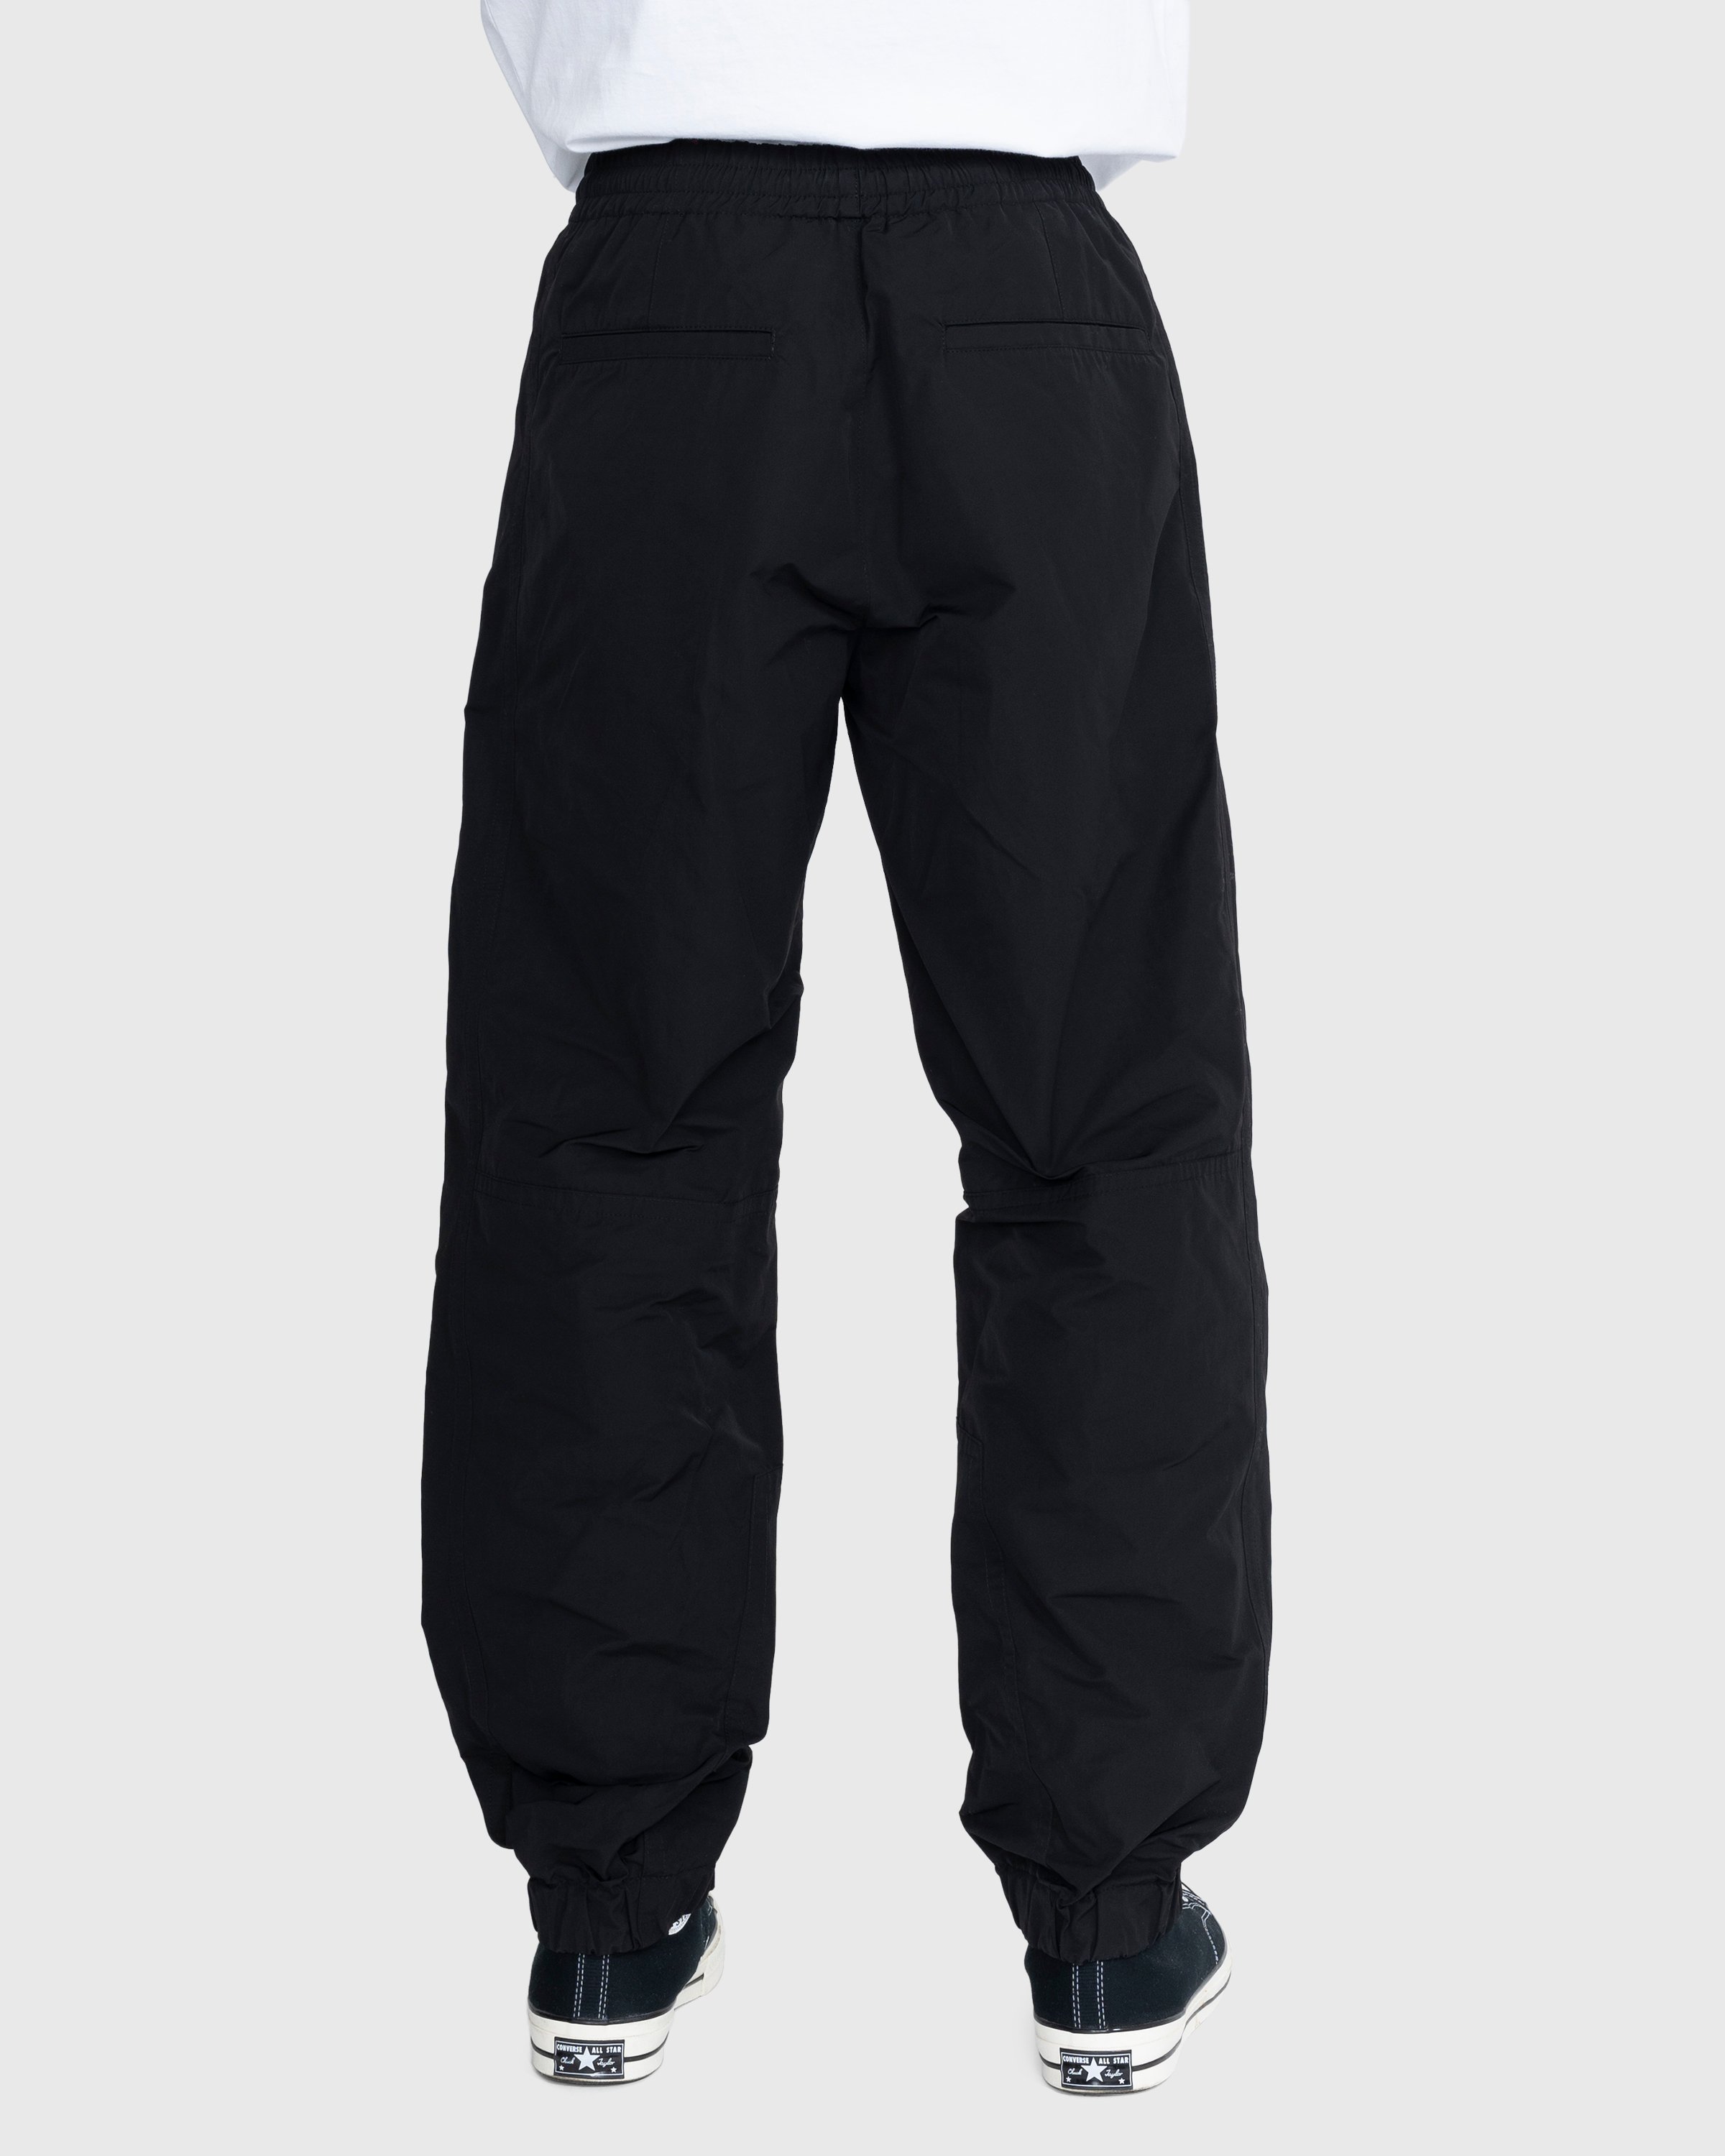 Dries van Noten - Peatt Pants - Clothing - Black - Image 4